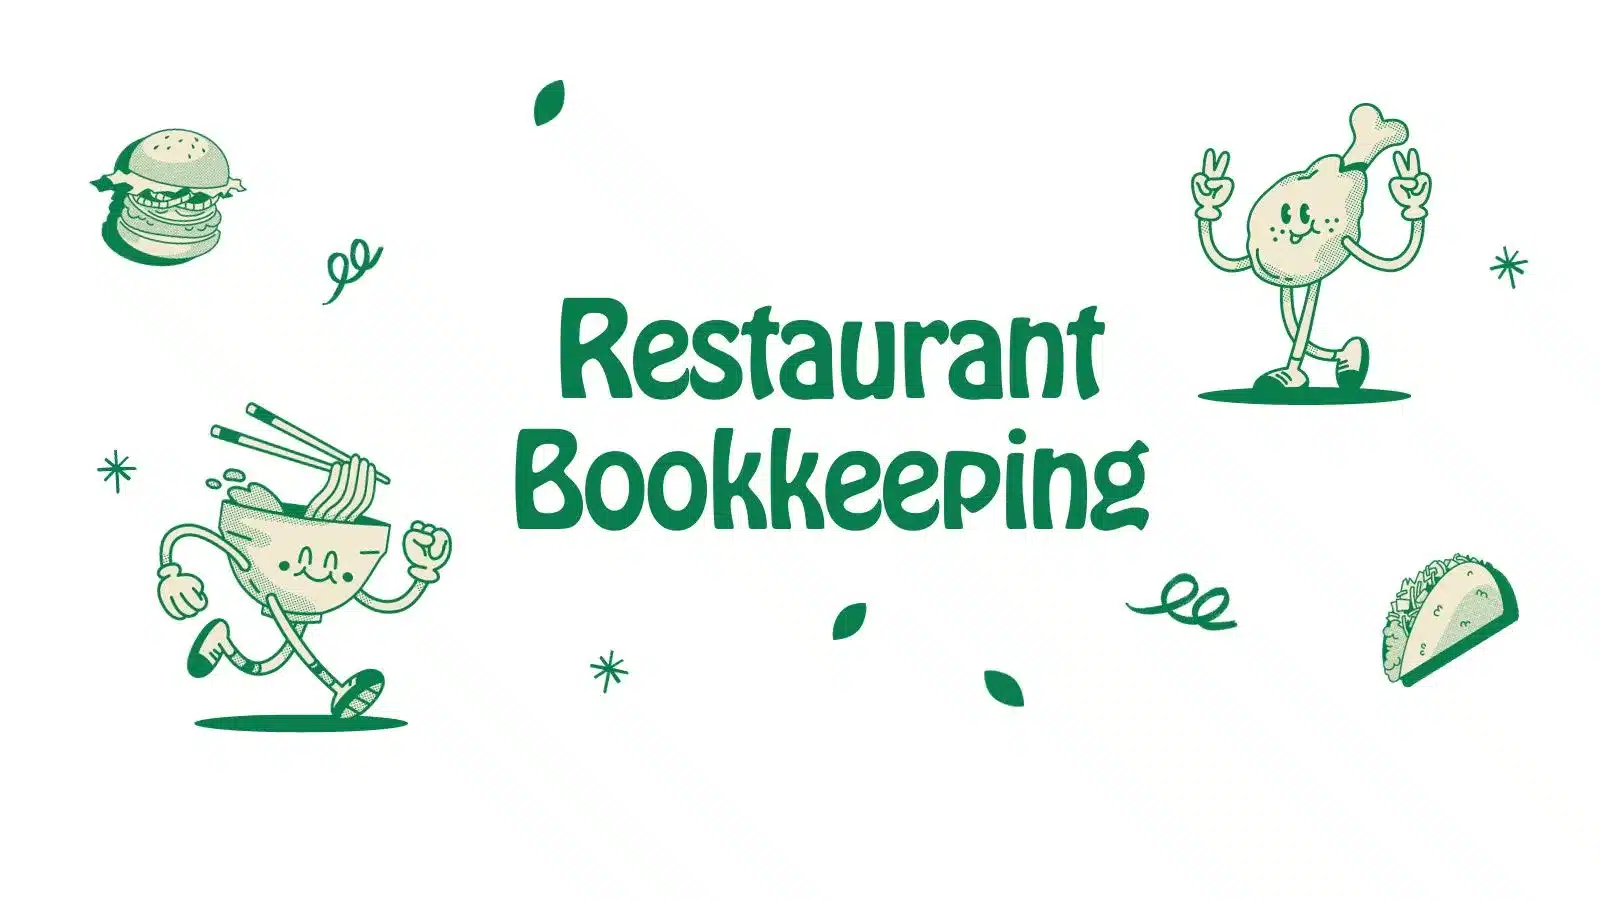 Understanding restaurant bookkeeping